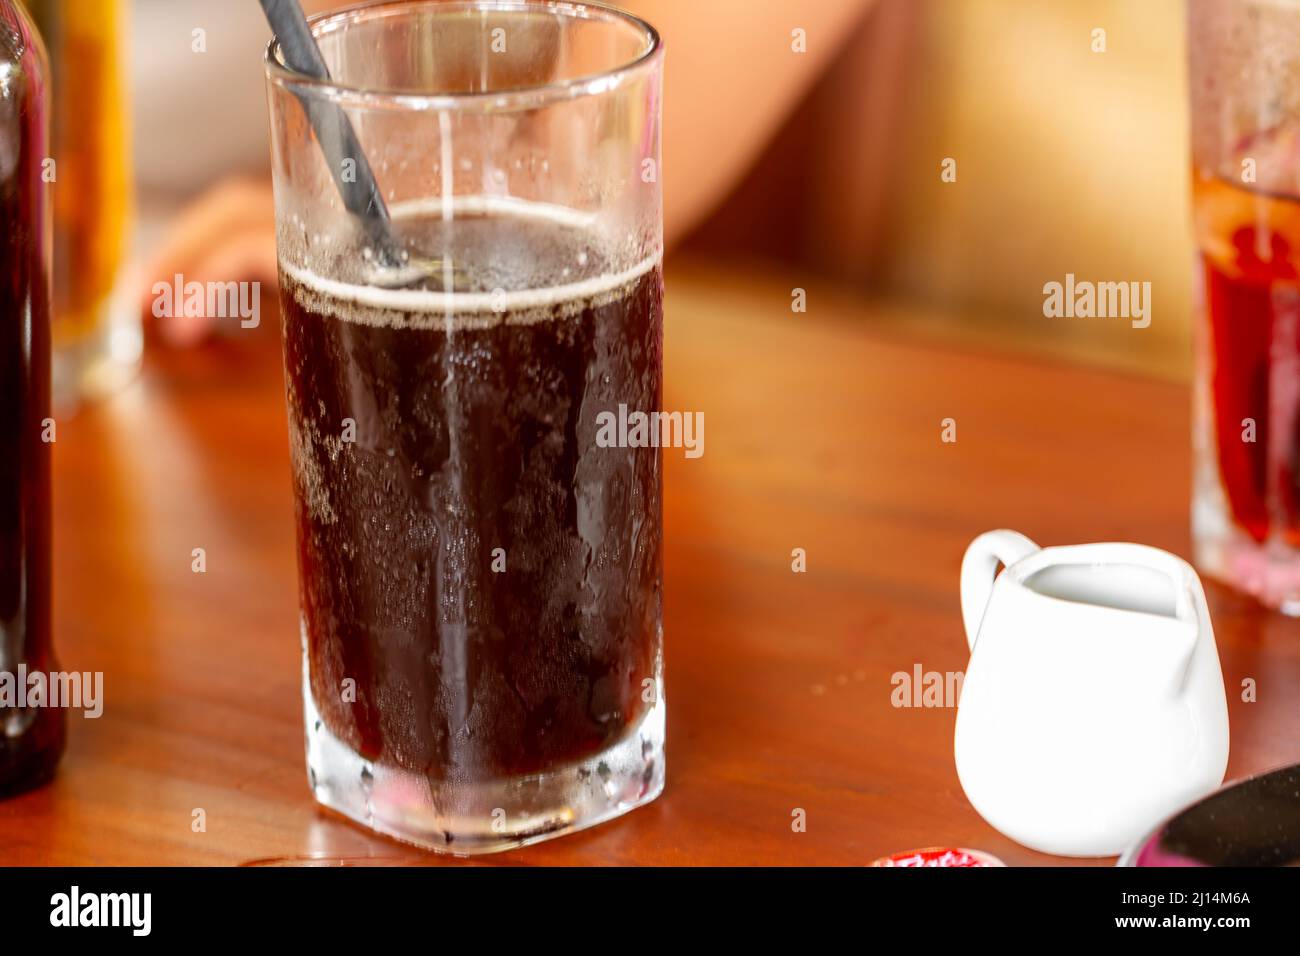 Un verre de café froid dans un verre transparent et une cuillère, frais pour être dégusté par temps chaud Banque D'Images